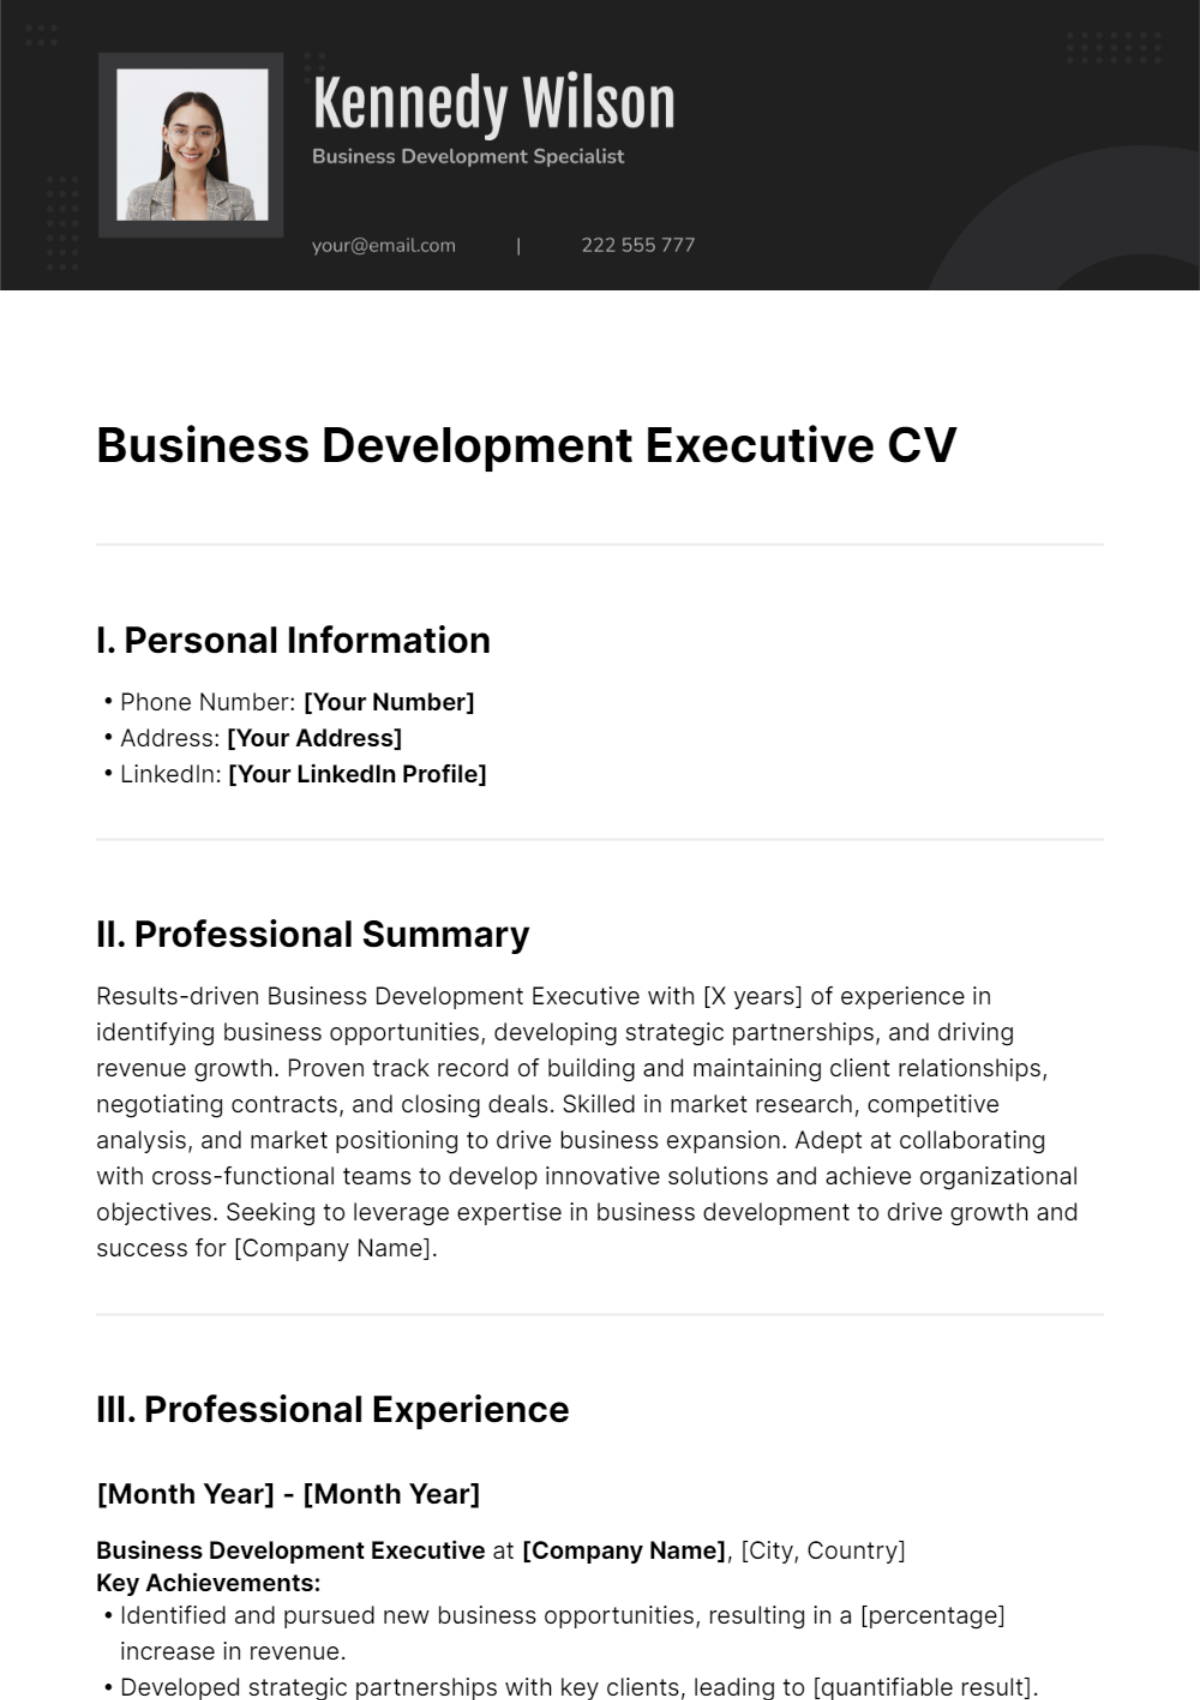 Business Development Executive CV Template